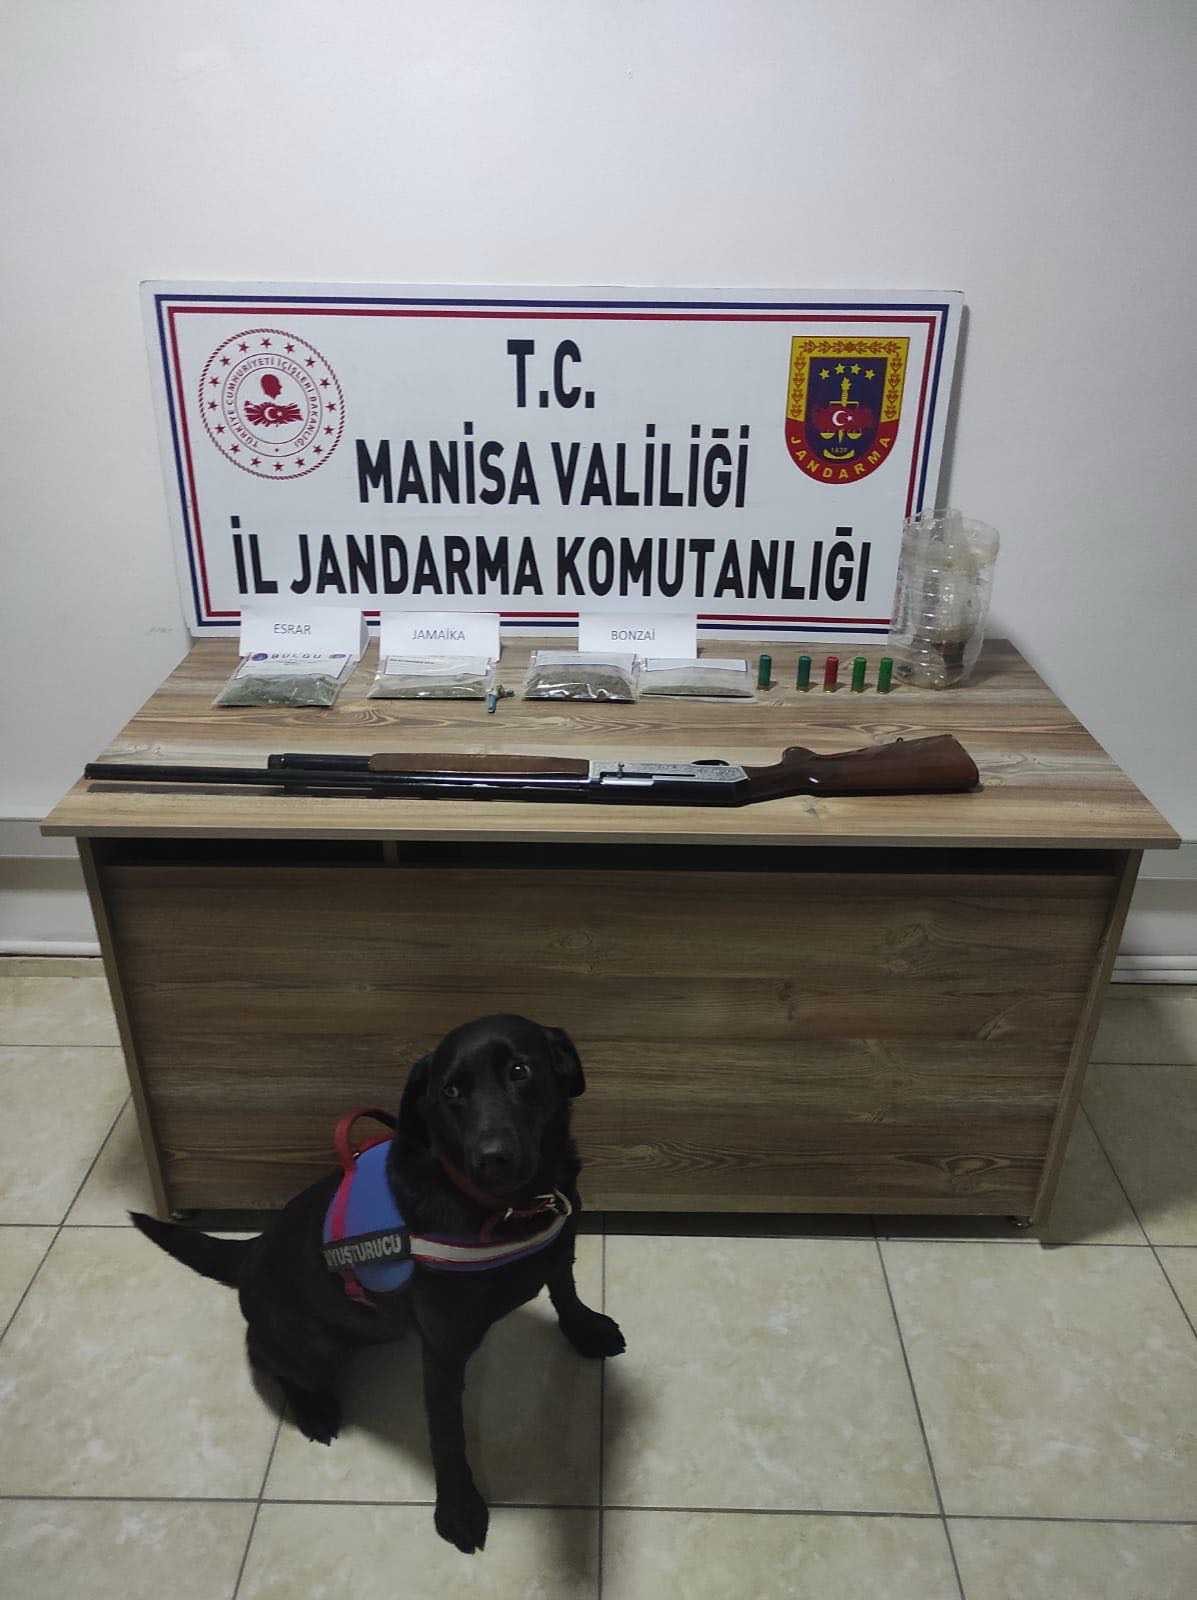 Evde saklanan uyuşturucuyu narkotik köpeği ’Arya’ buldu #manisa